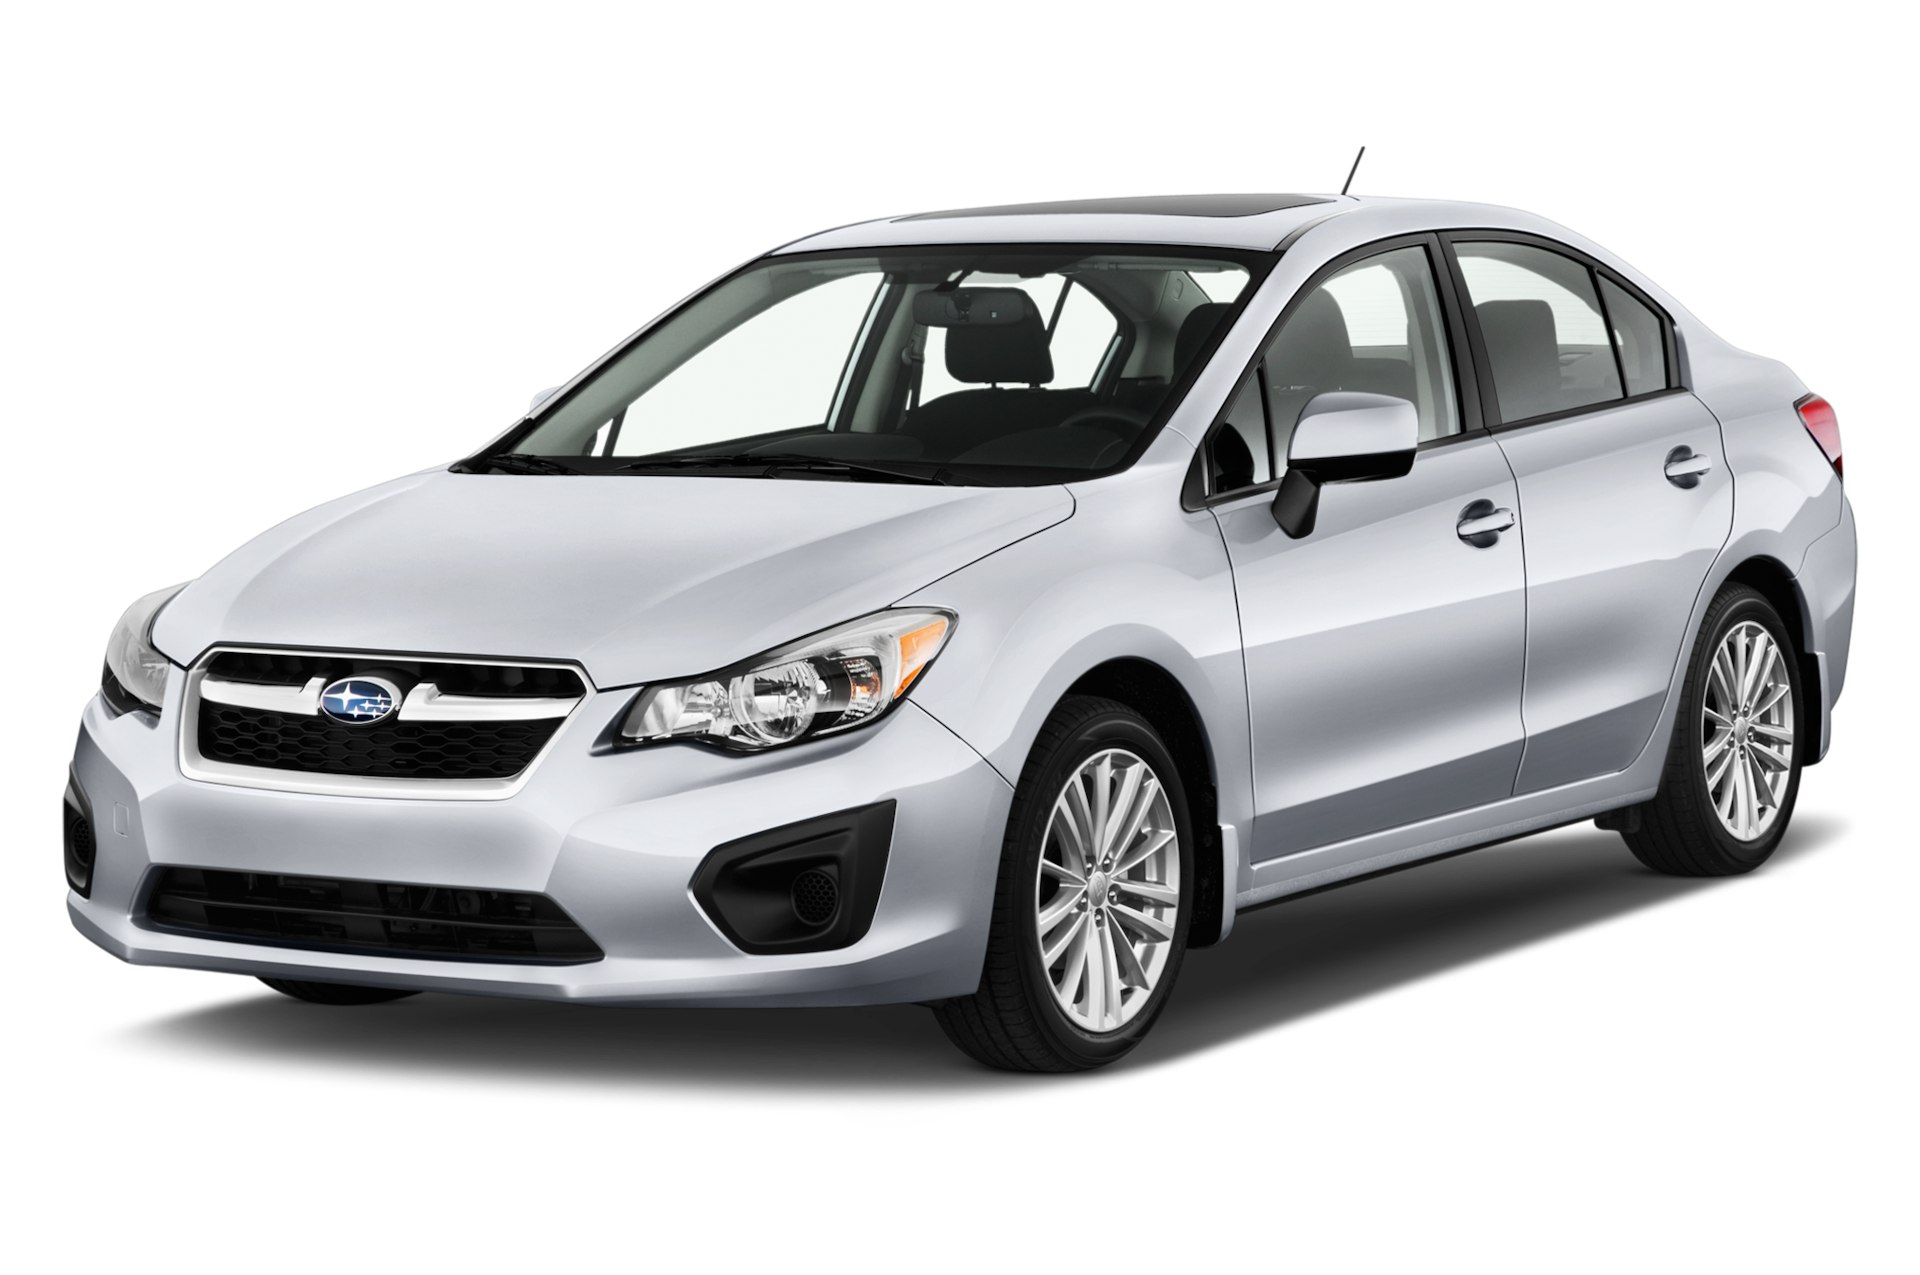 2012 Subaru Impreza Prices, Reviews, and Photos - MotorTrend